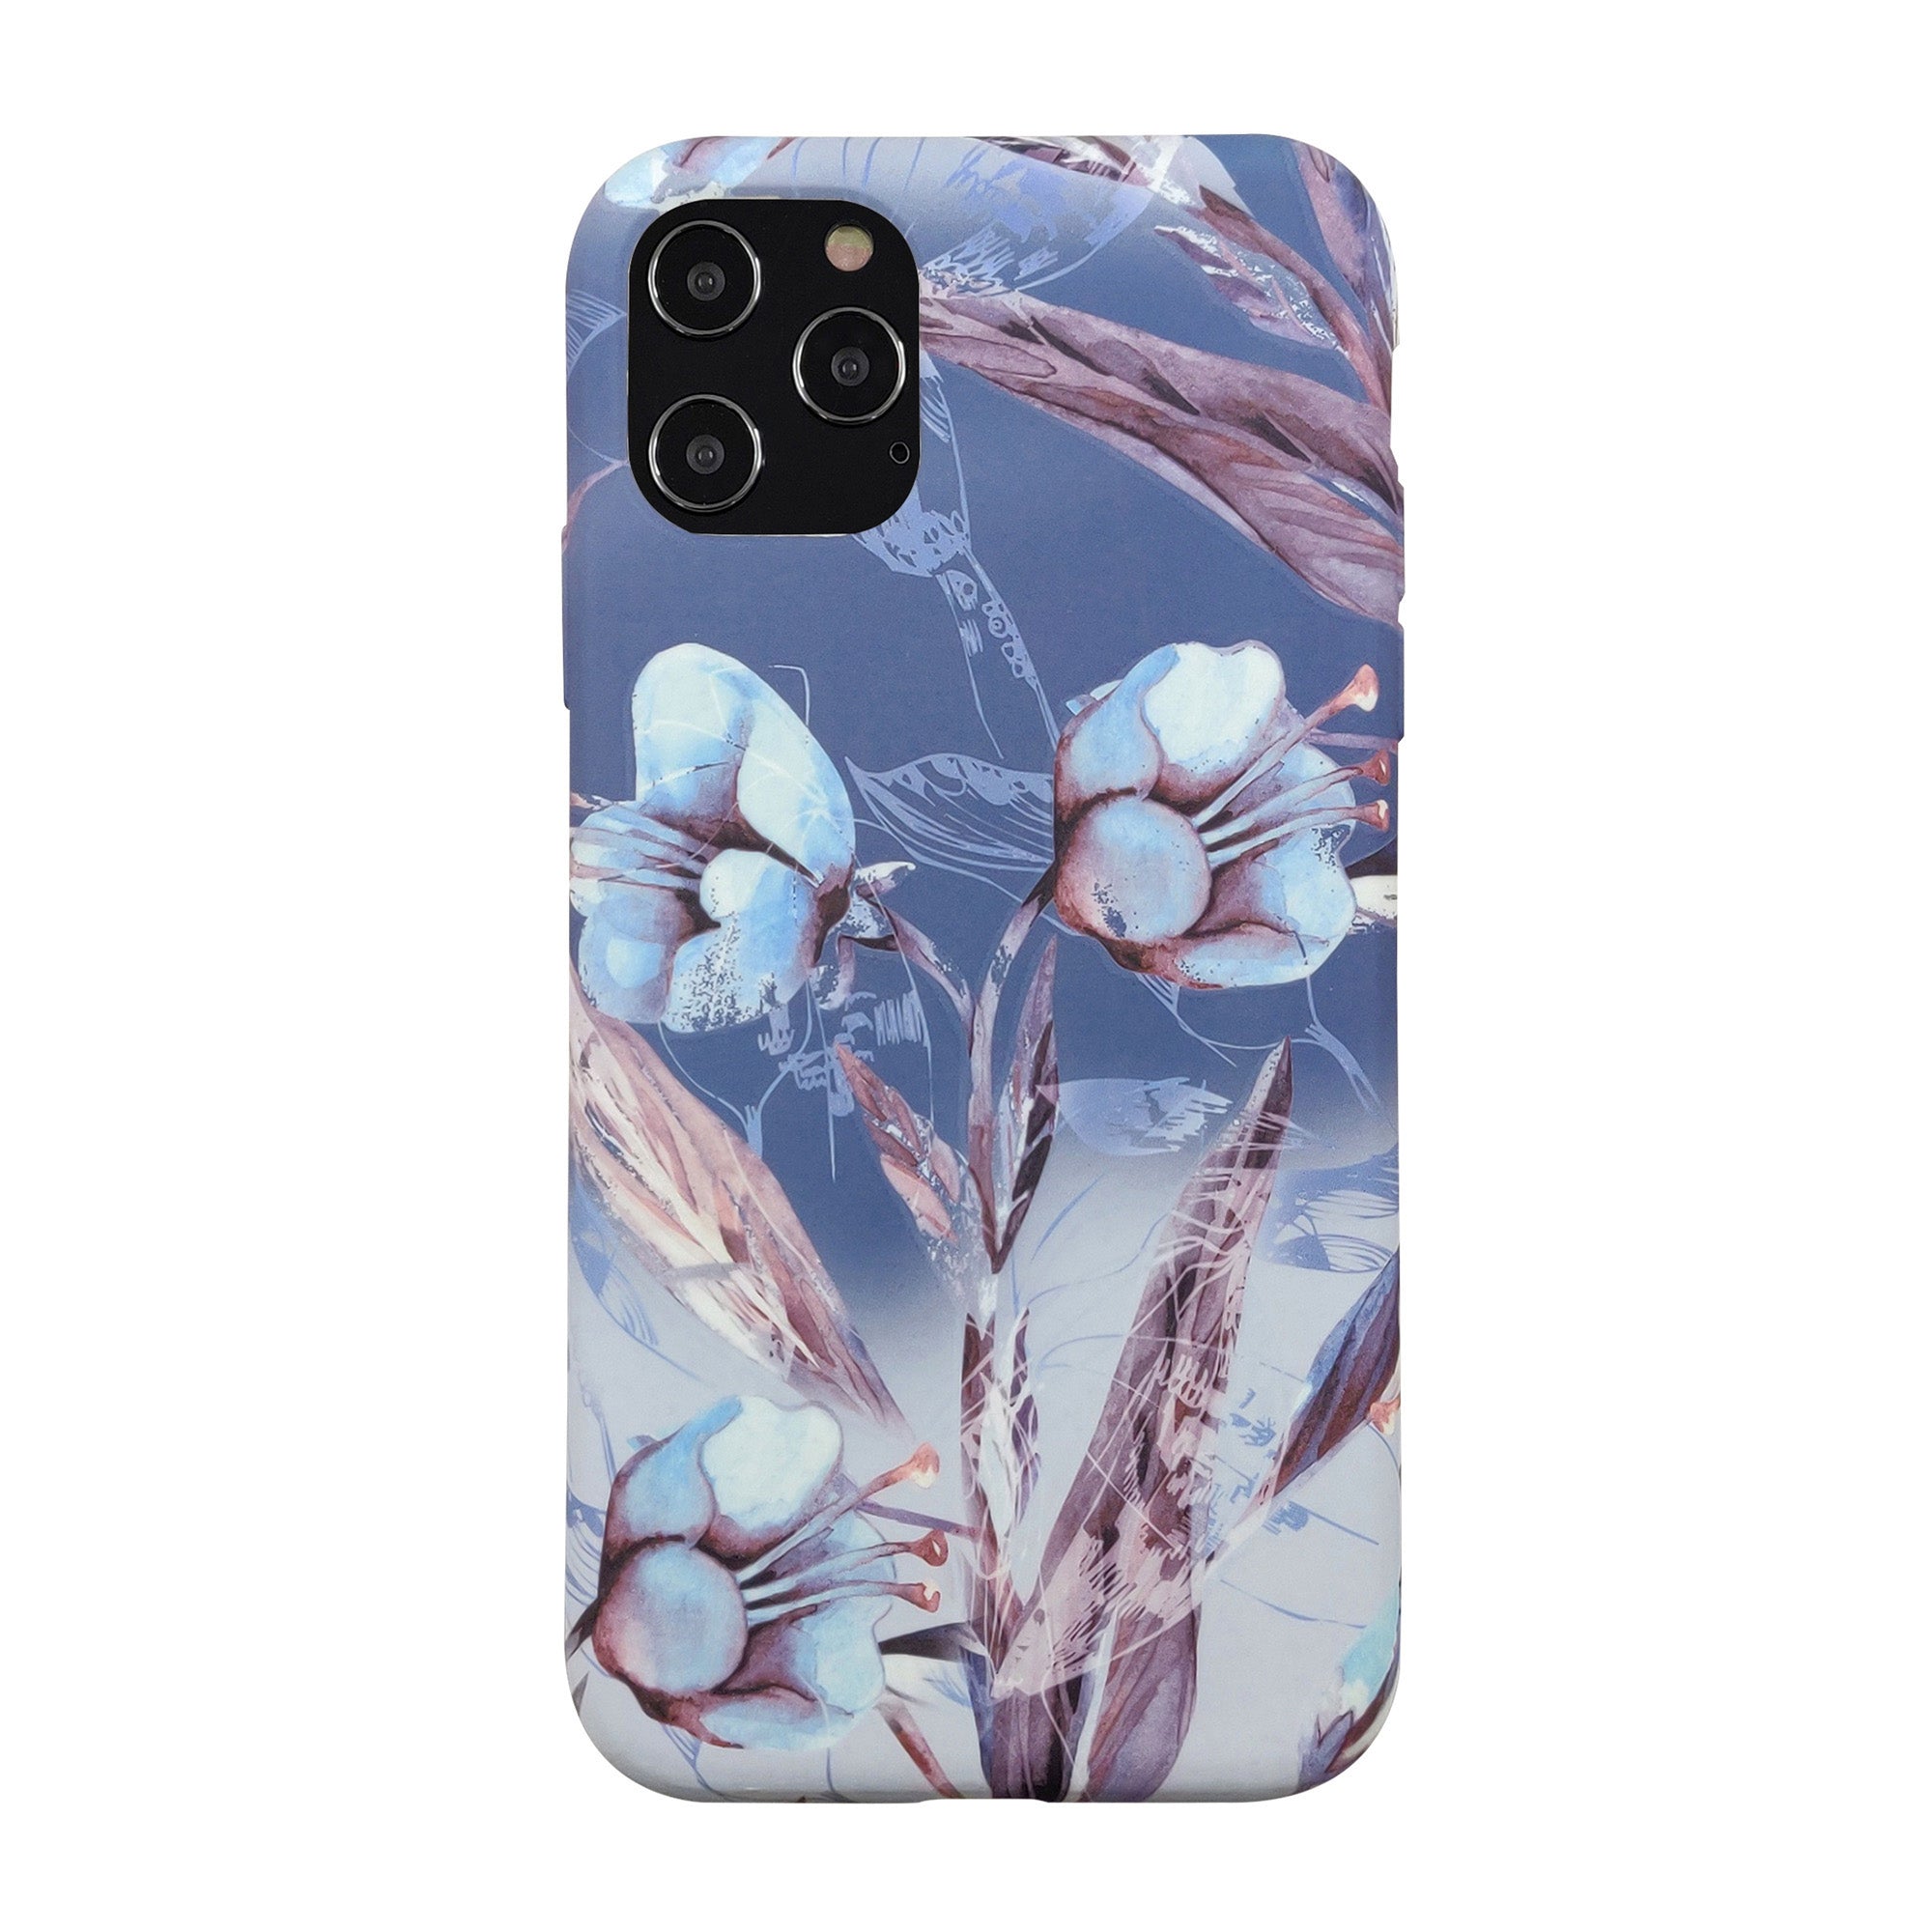 iPhone 12 Pro Max Uunique Blue (Blue Iris) Nutrisiti Eco Printed Back Case - 15-07642